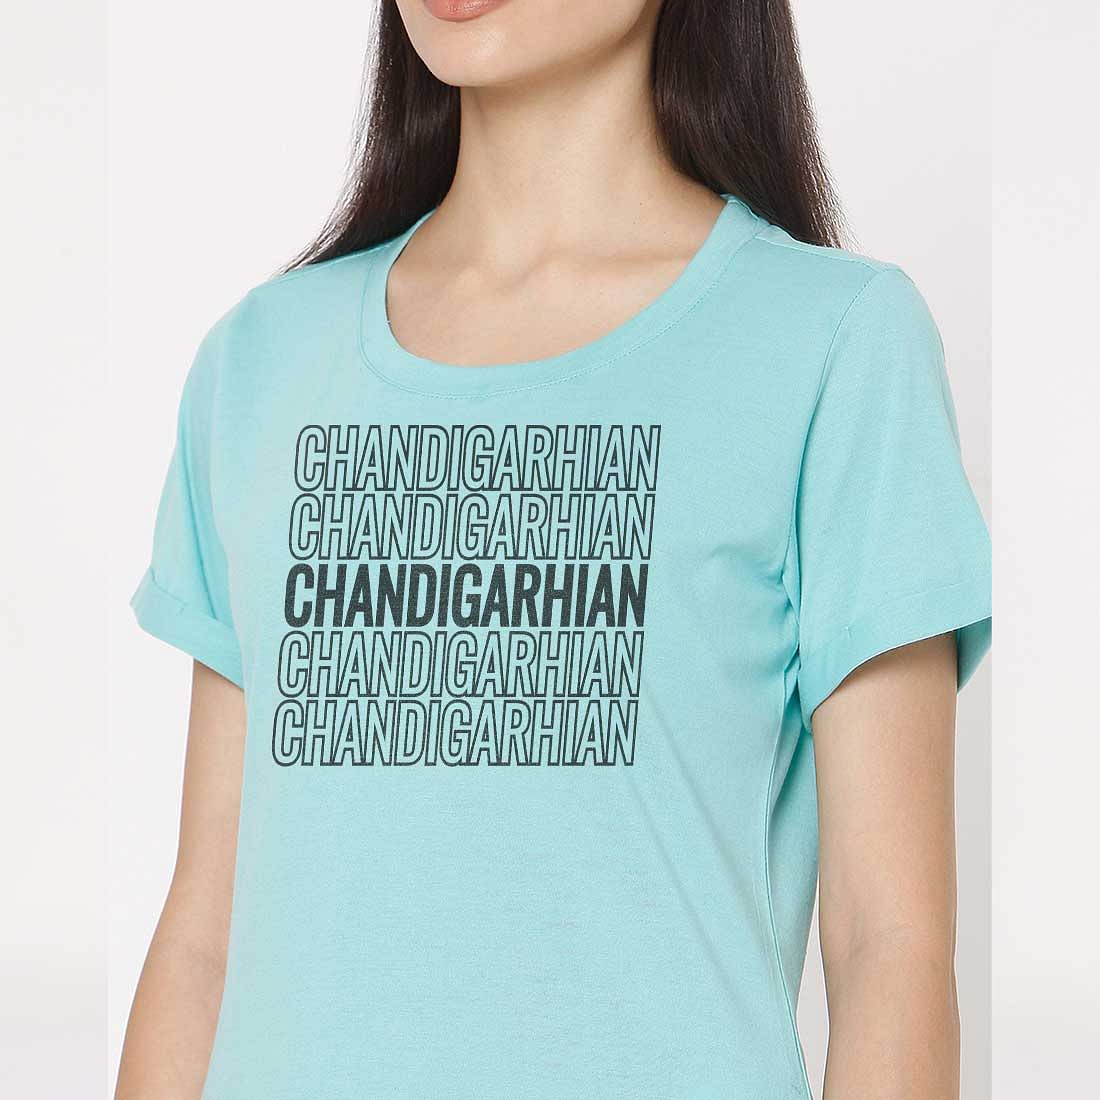 Cool Women Tshirts Girls Tees - Chandigarhian Nutcase